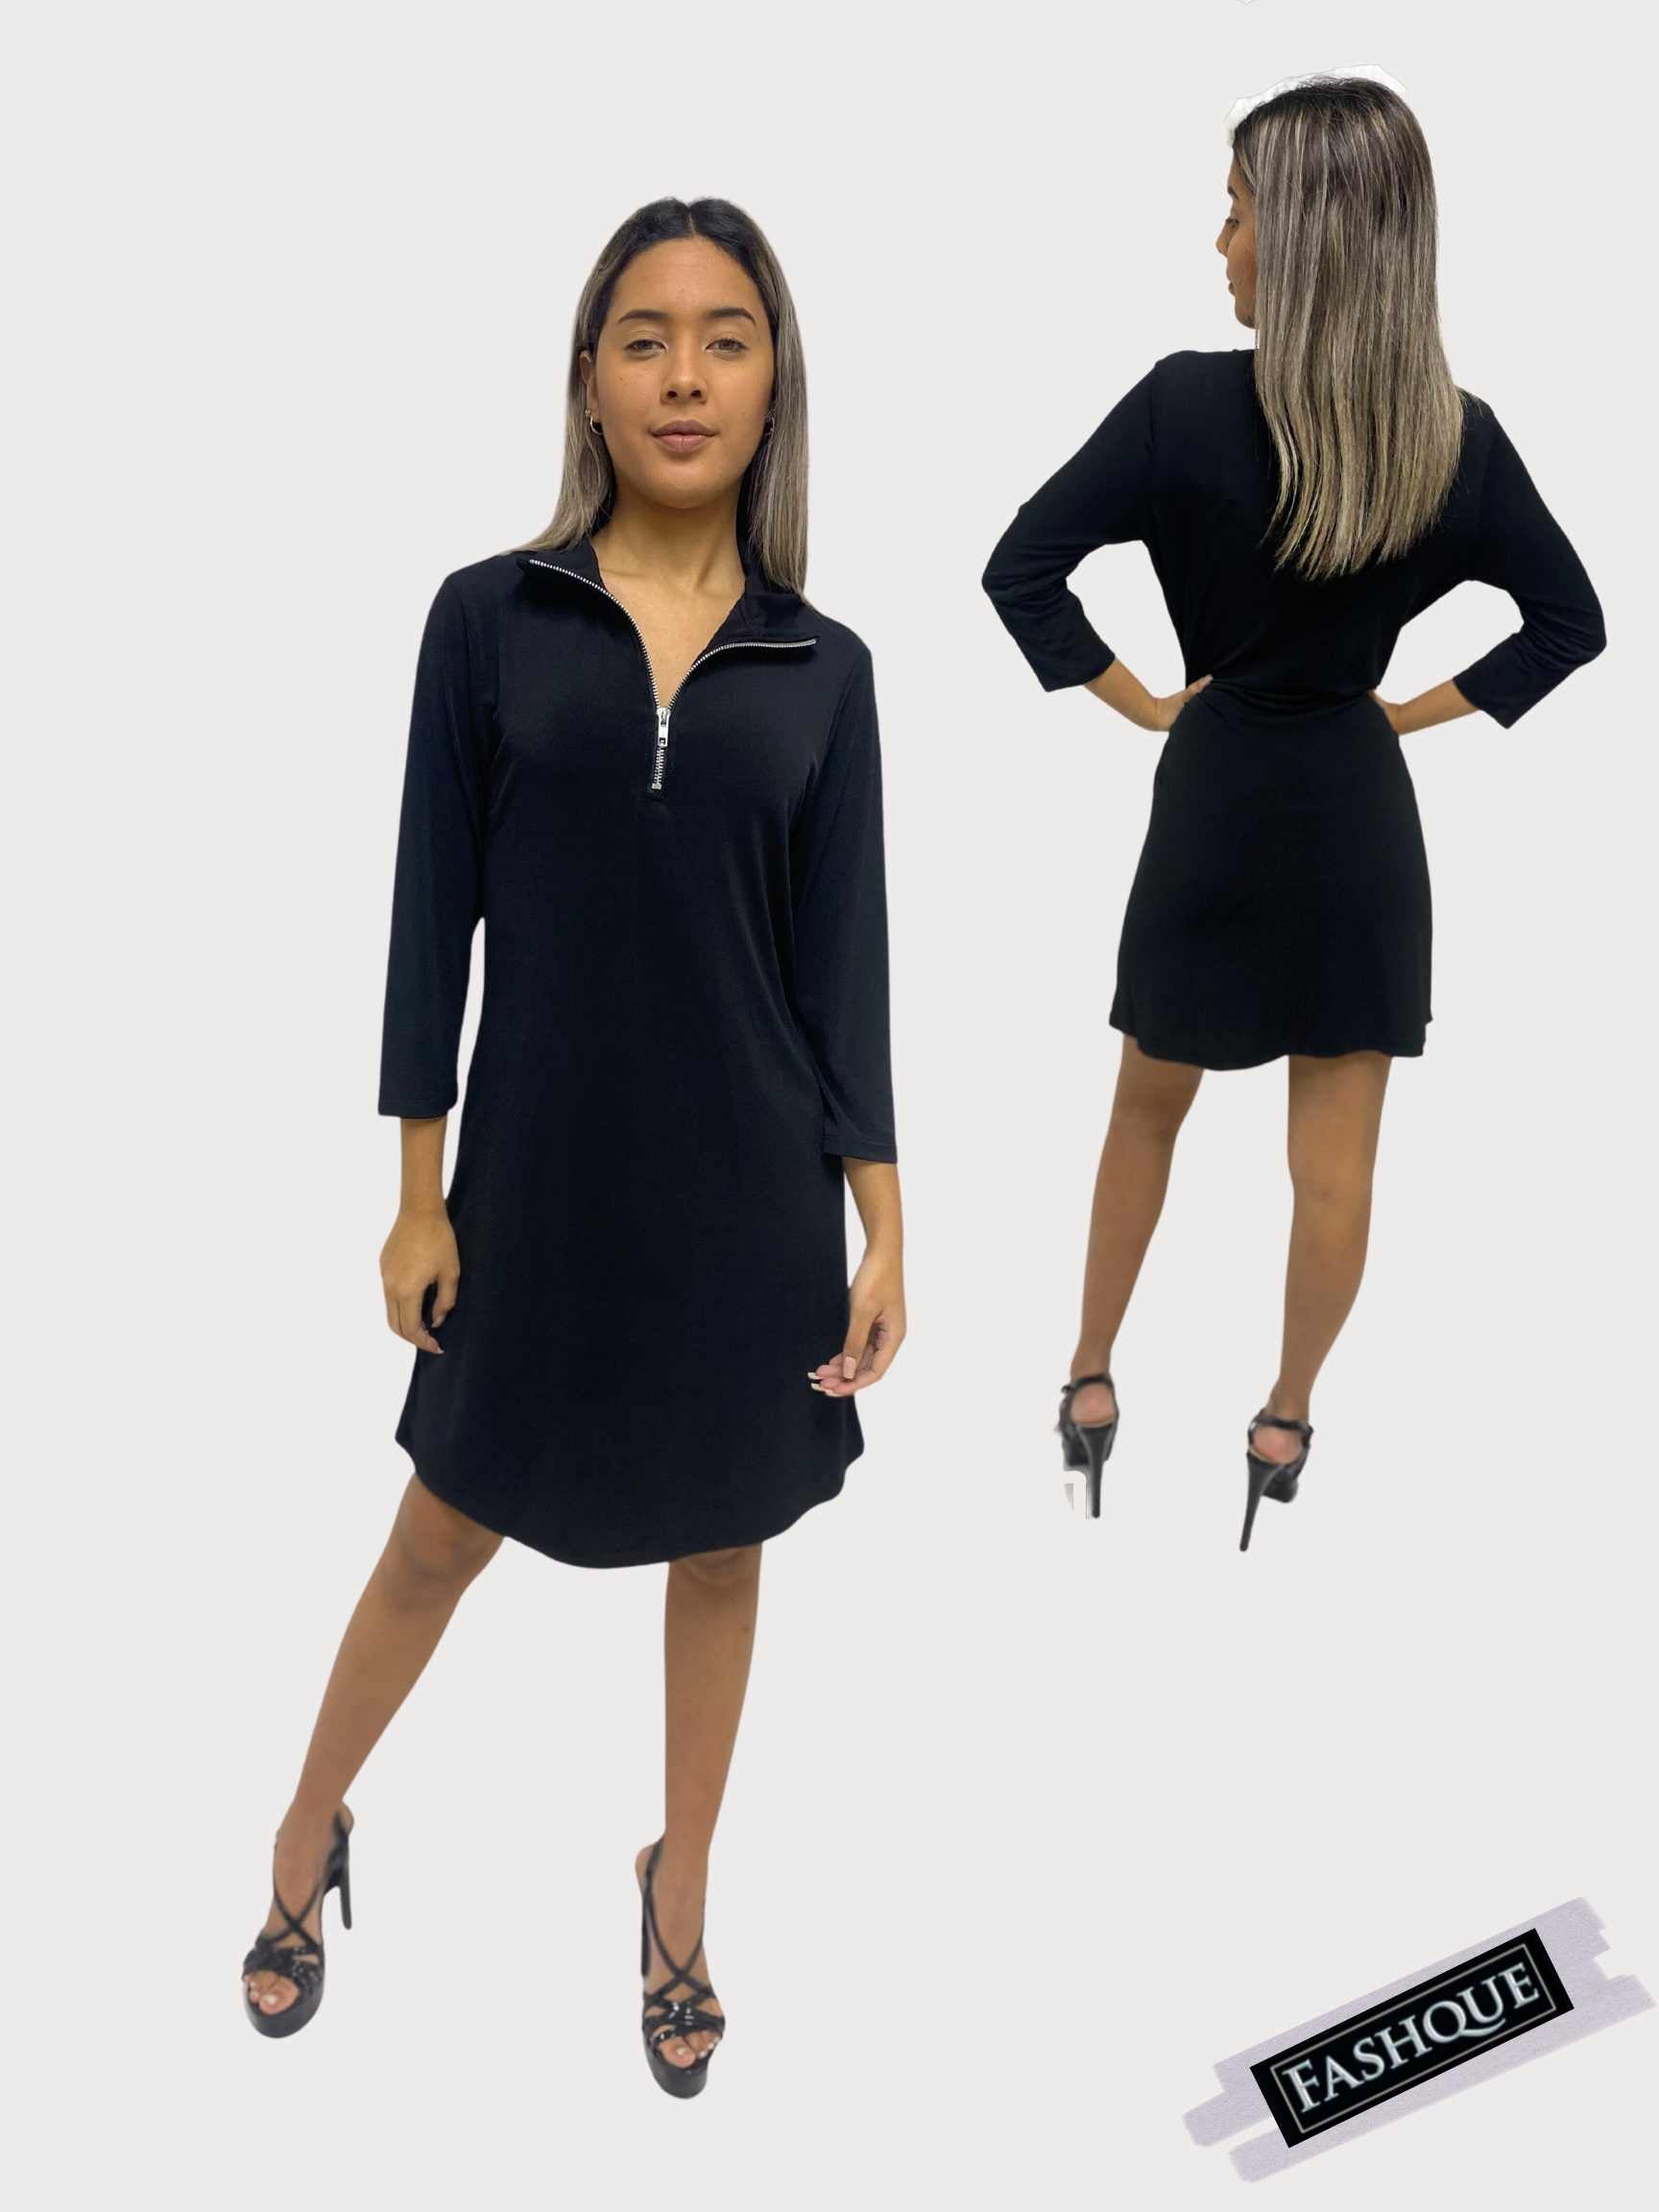 FASHQUE - Dress Zipper Front with Collar 3/4 Sleeve Dress - D063